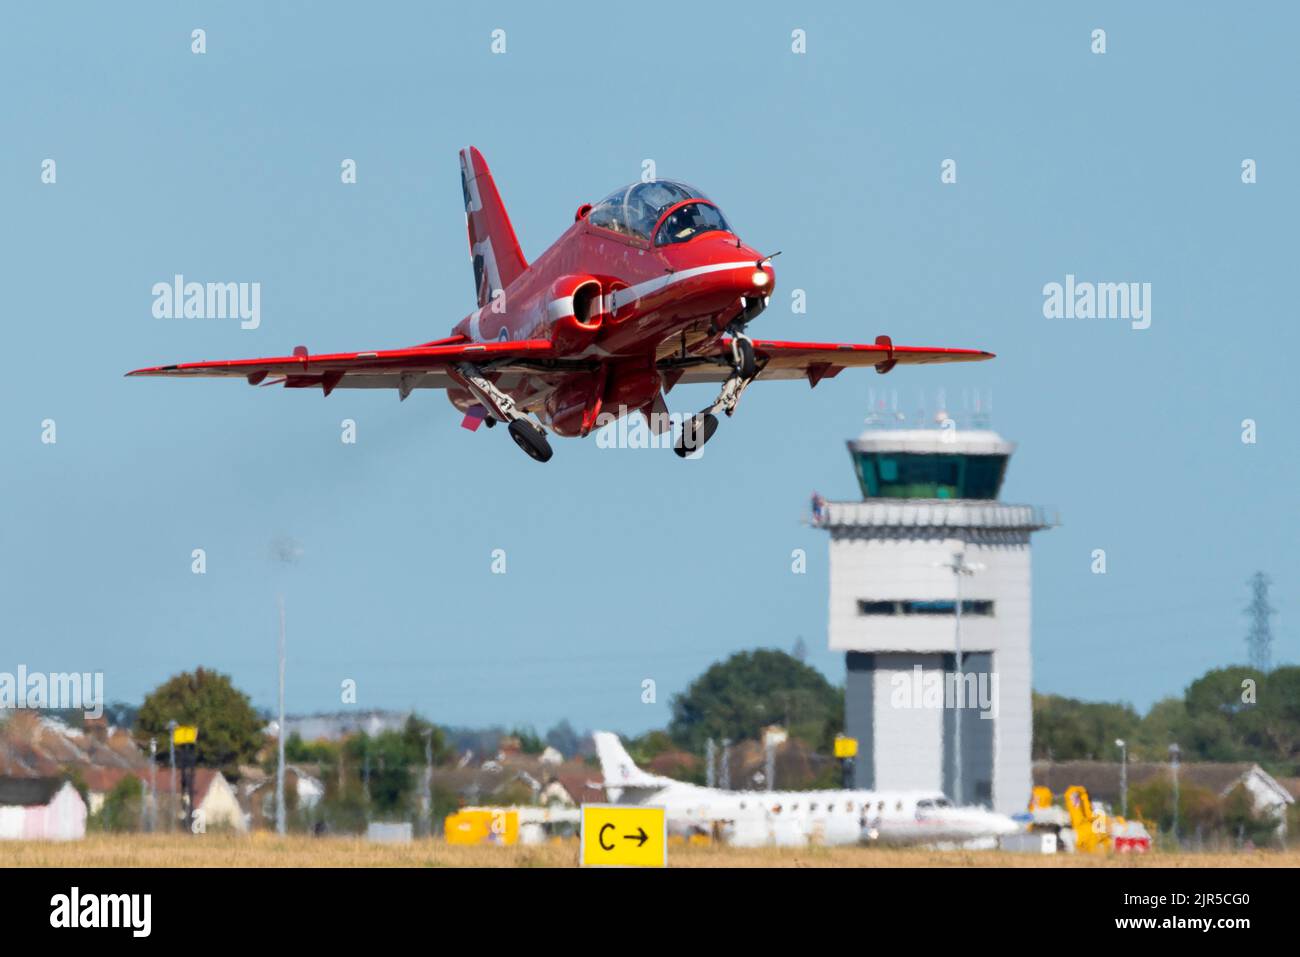 Royal Air Force Red Arrows BAe Hawk jet plane che parte dall'aeroporto Southend di Londra per essere esposto all'Eastbourne Airshow. Arrampicata. Foto Stock